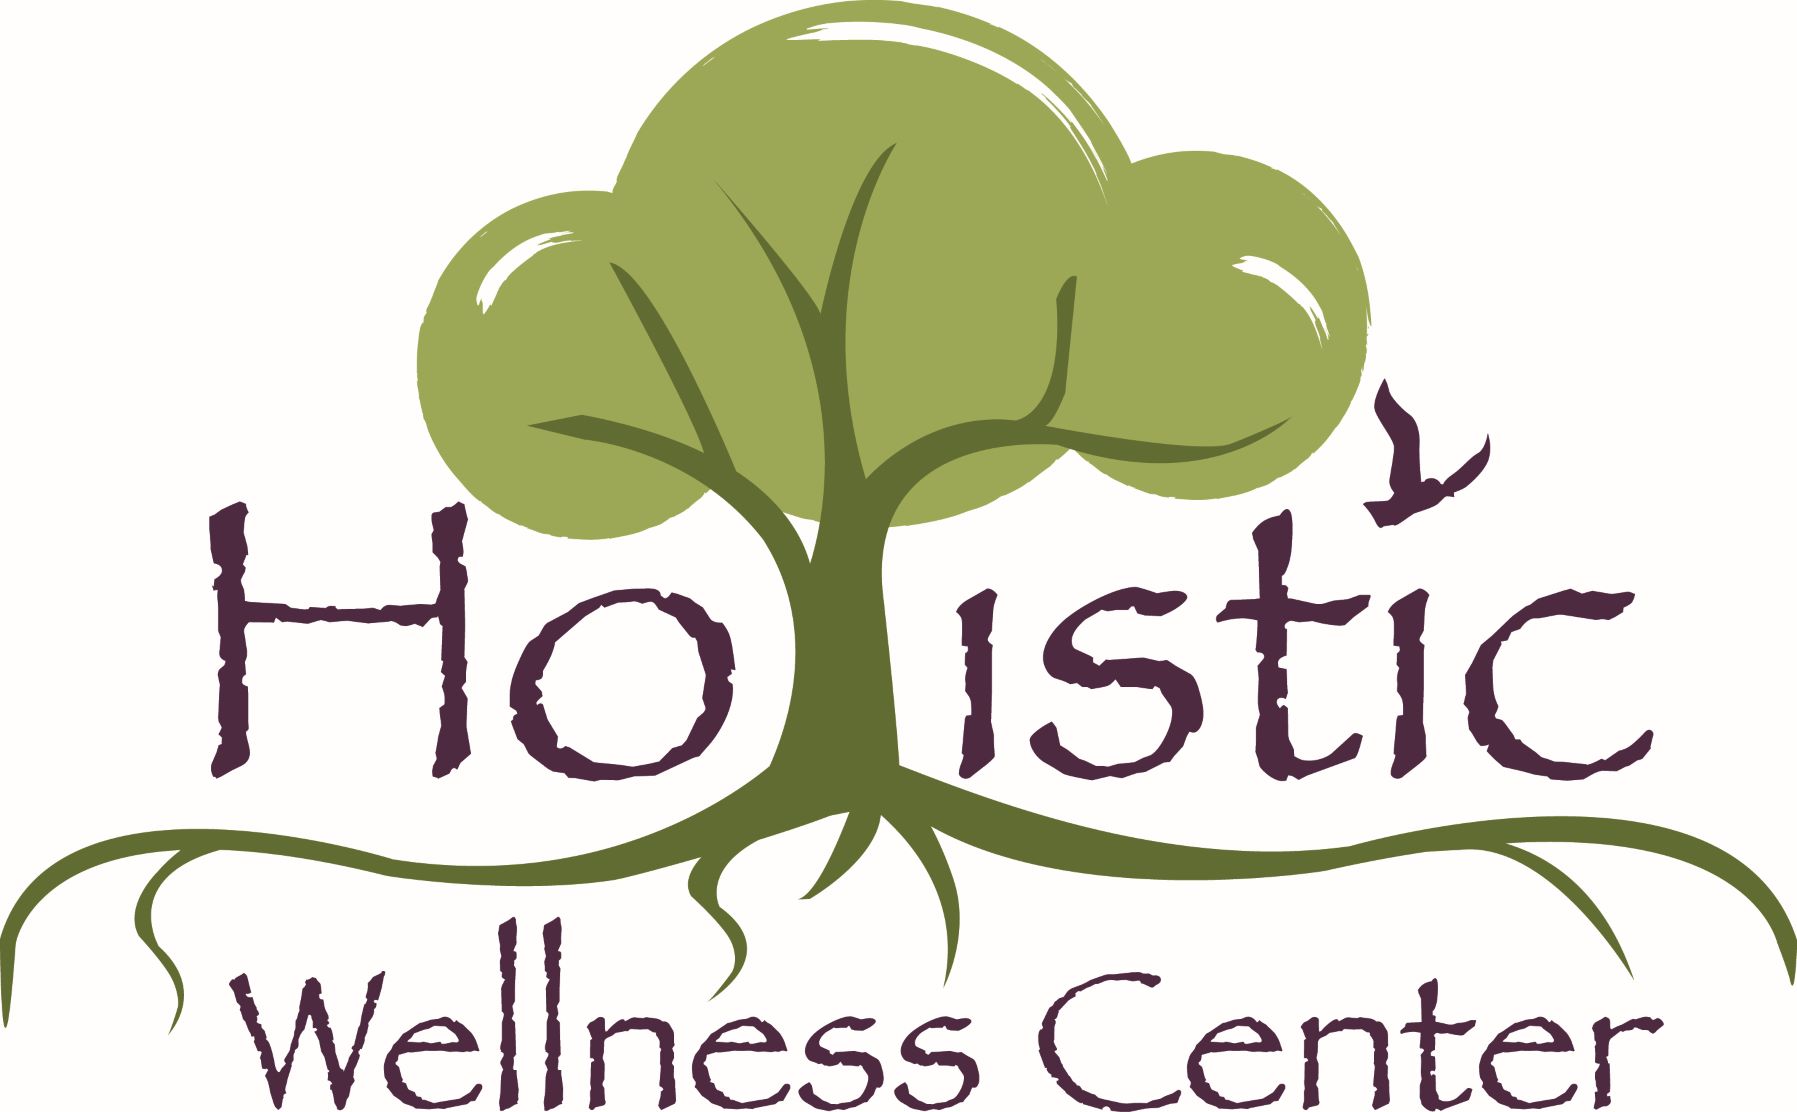 Holistic Wellness Center